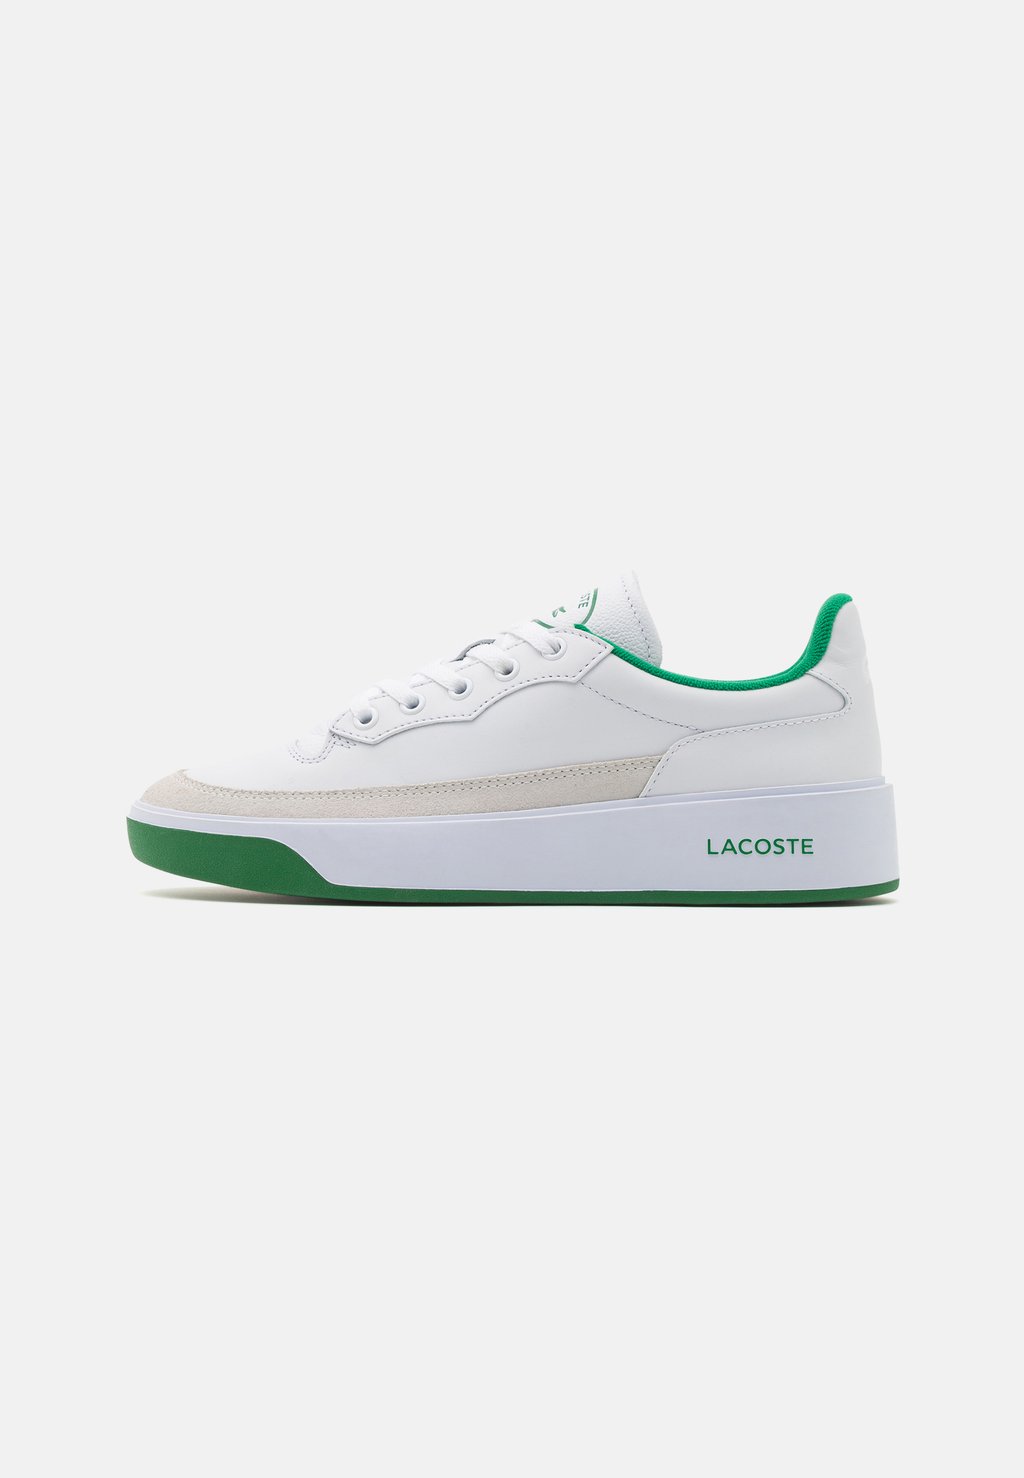 Низкие кроссовки G80 CLUB Lacoste, кремовый/зеленый низкие кроссовки partner retro lacoste кремовый темно зеленый